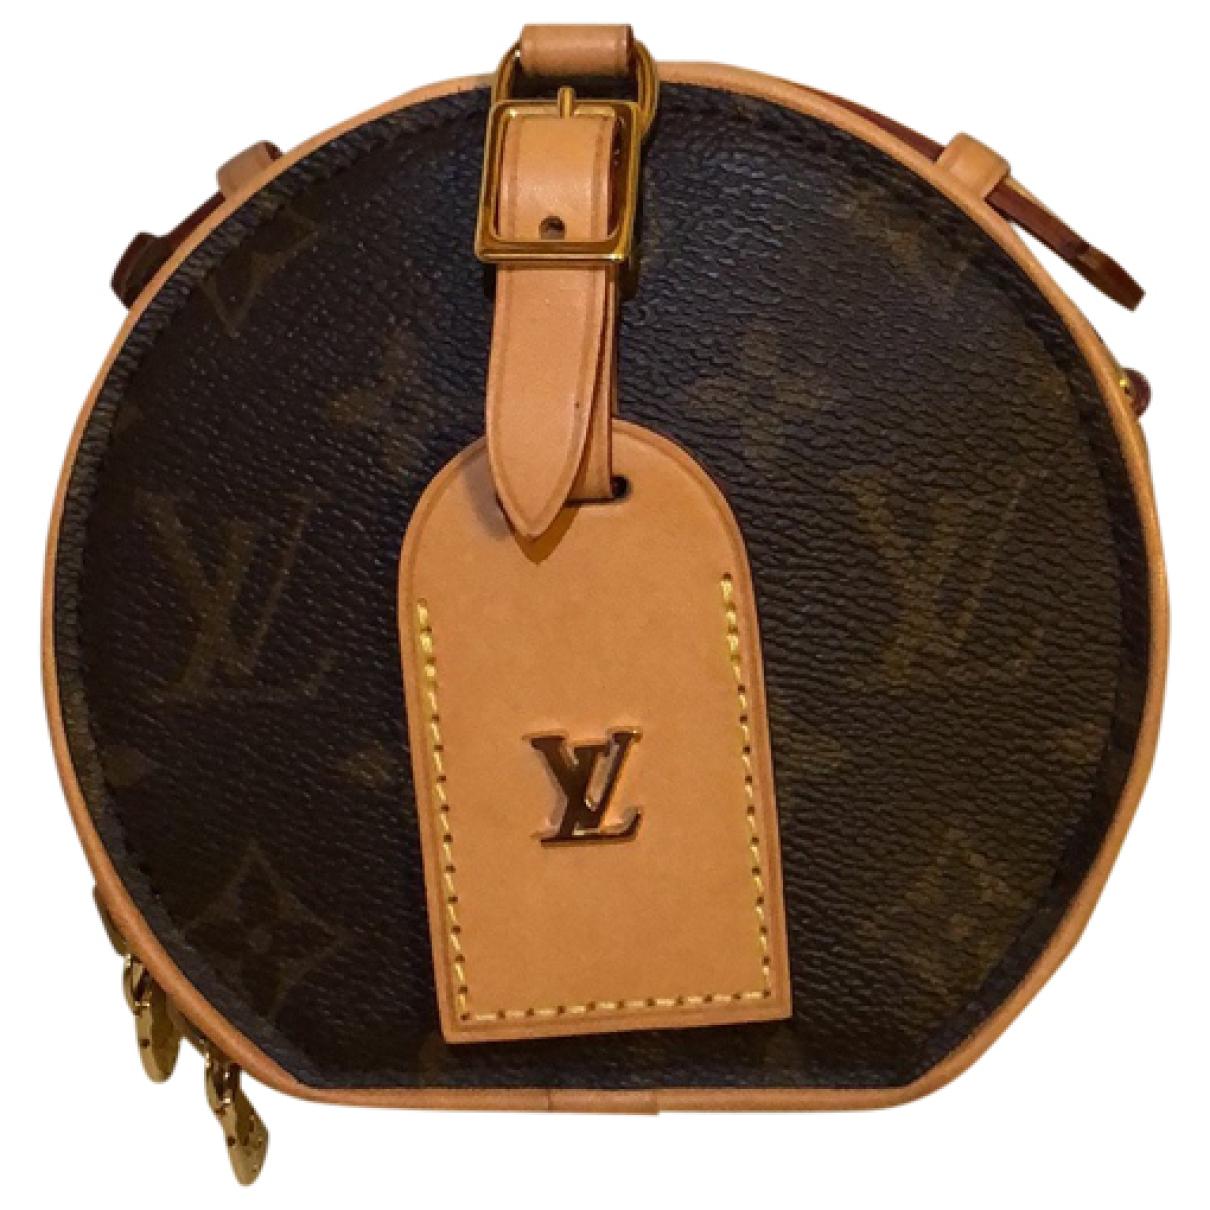 Petite casquette Louis Vuitton!!! - Attention Cournon reprézent!!!